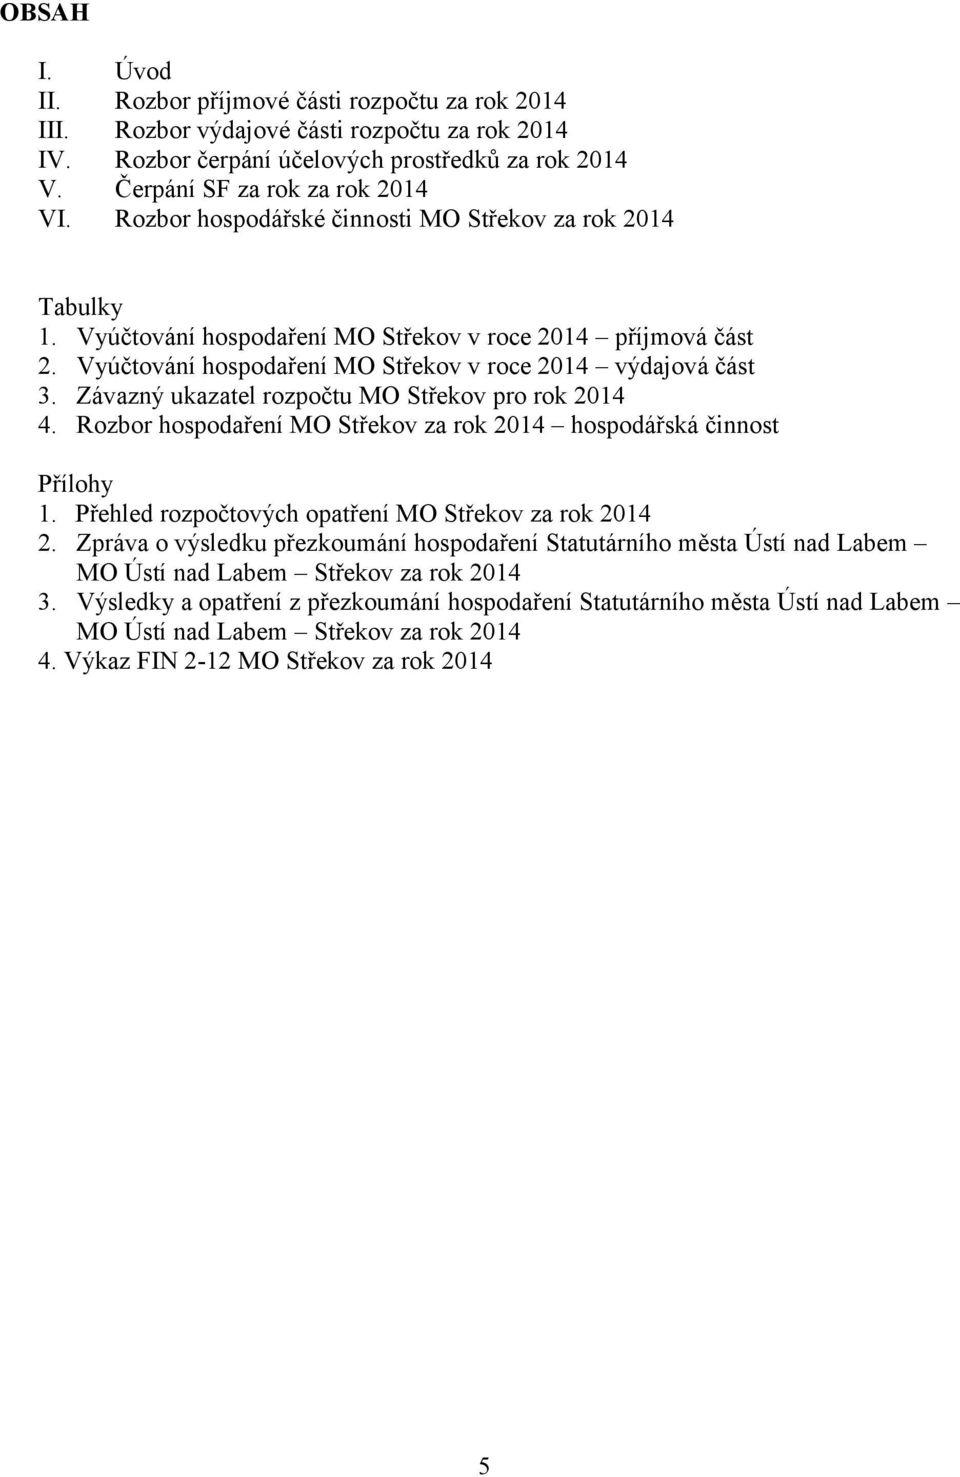 Závazný ukazatel rozpočtu MO Střekov pro rok 2014 4. Rozbor hospodaření MO Střekov za rok 2014 hospodářská činnost Přílohy 1. Přehled rozpočtových opatření MO Střekov za rok 2014 2.